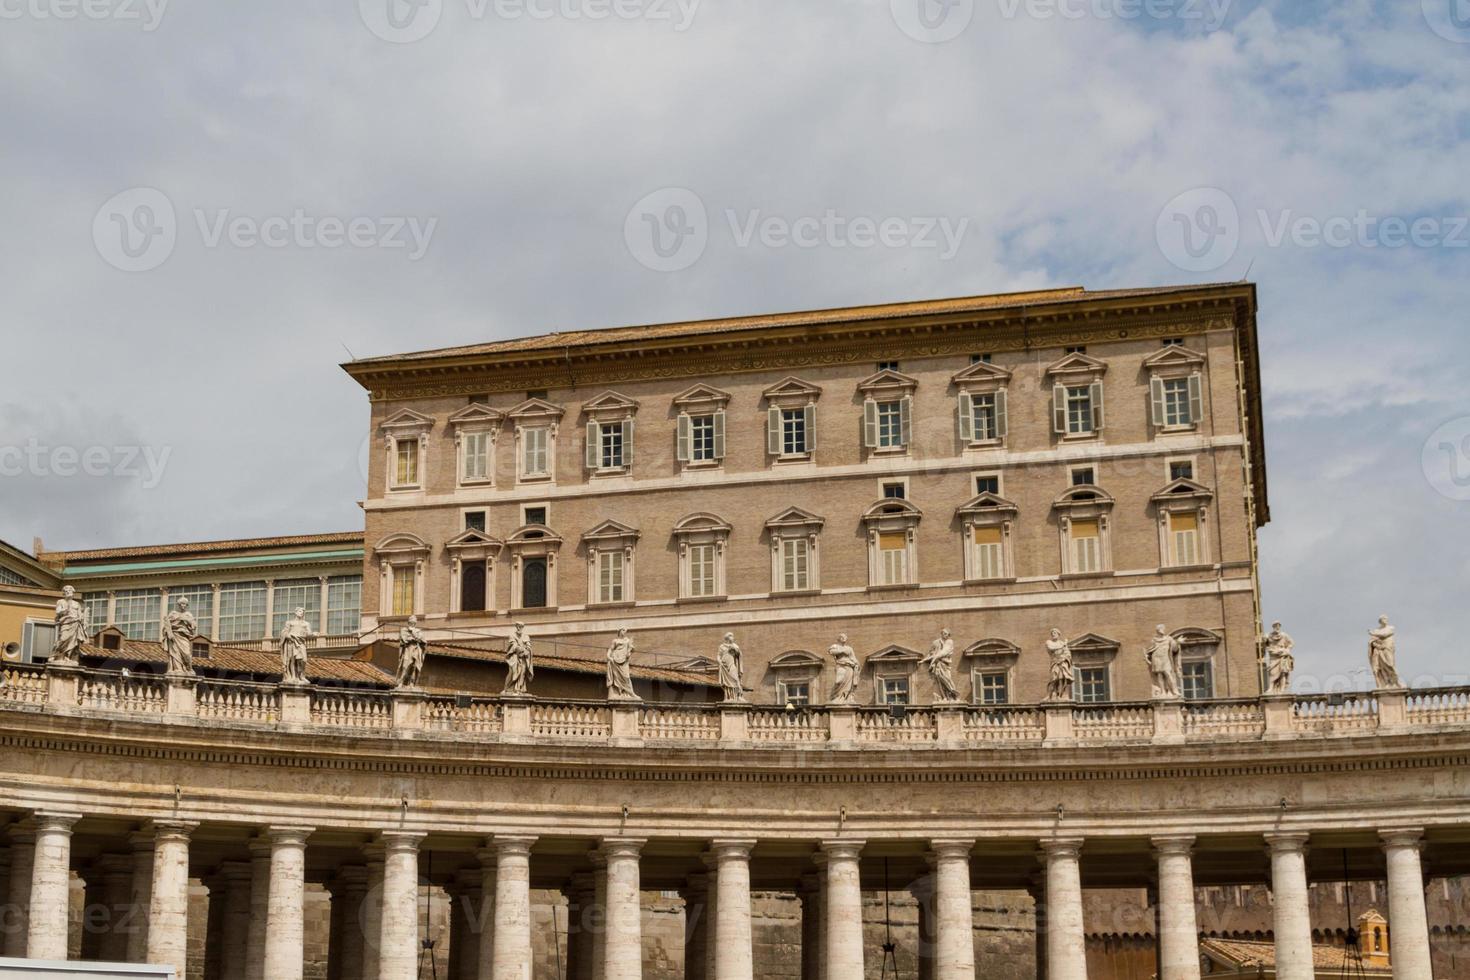 byggnader i Vatikanen, den heliga stolen i Rom, Italien. del av Peterskyrkan. foto